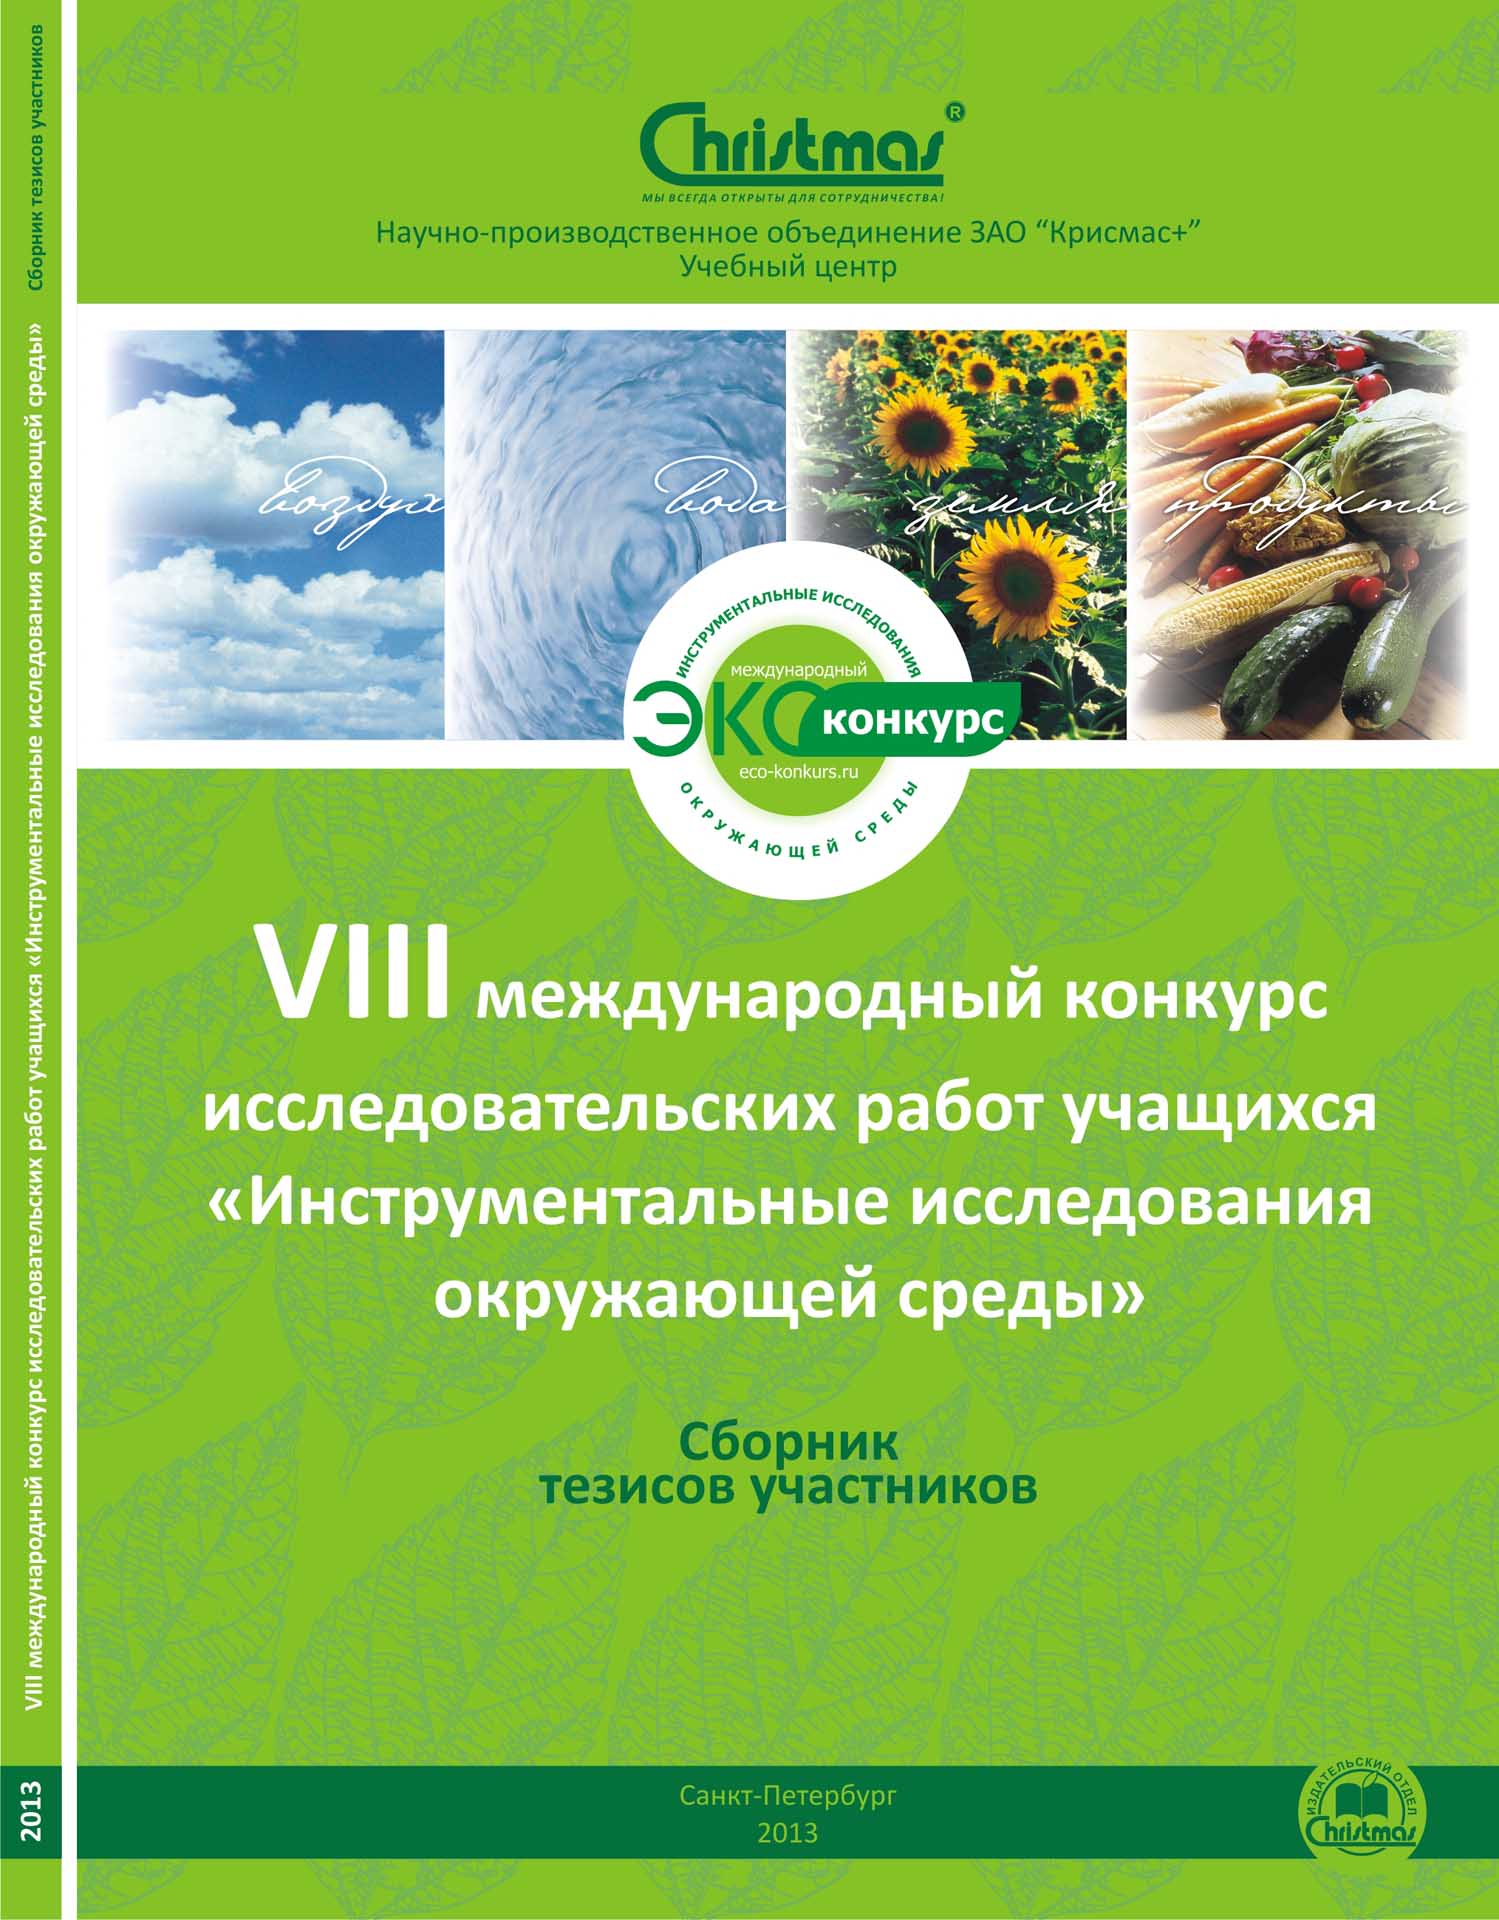 ЗАО «Крисмас+» выпустило сборник тезисов участников VIII международного конкурса исследовательских работ учащихся «Инструментальные исследования окружающей среды»